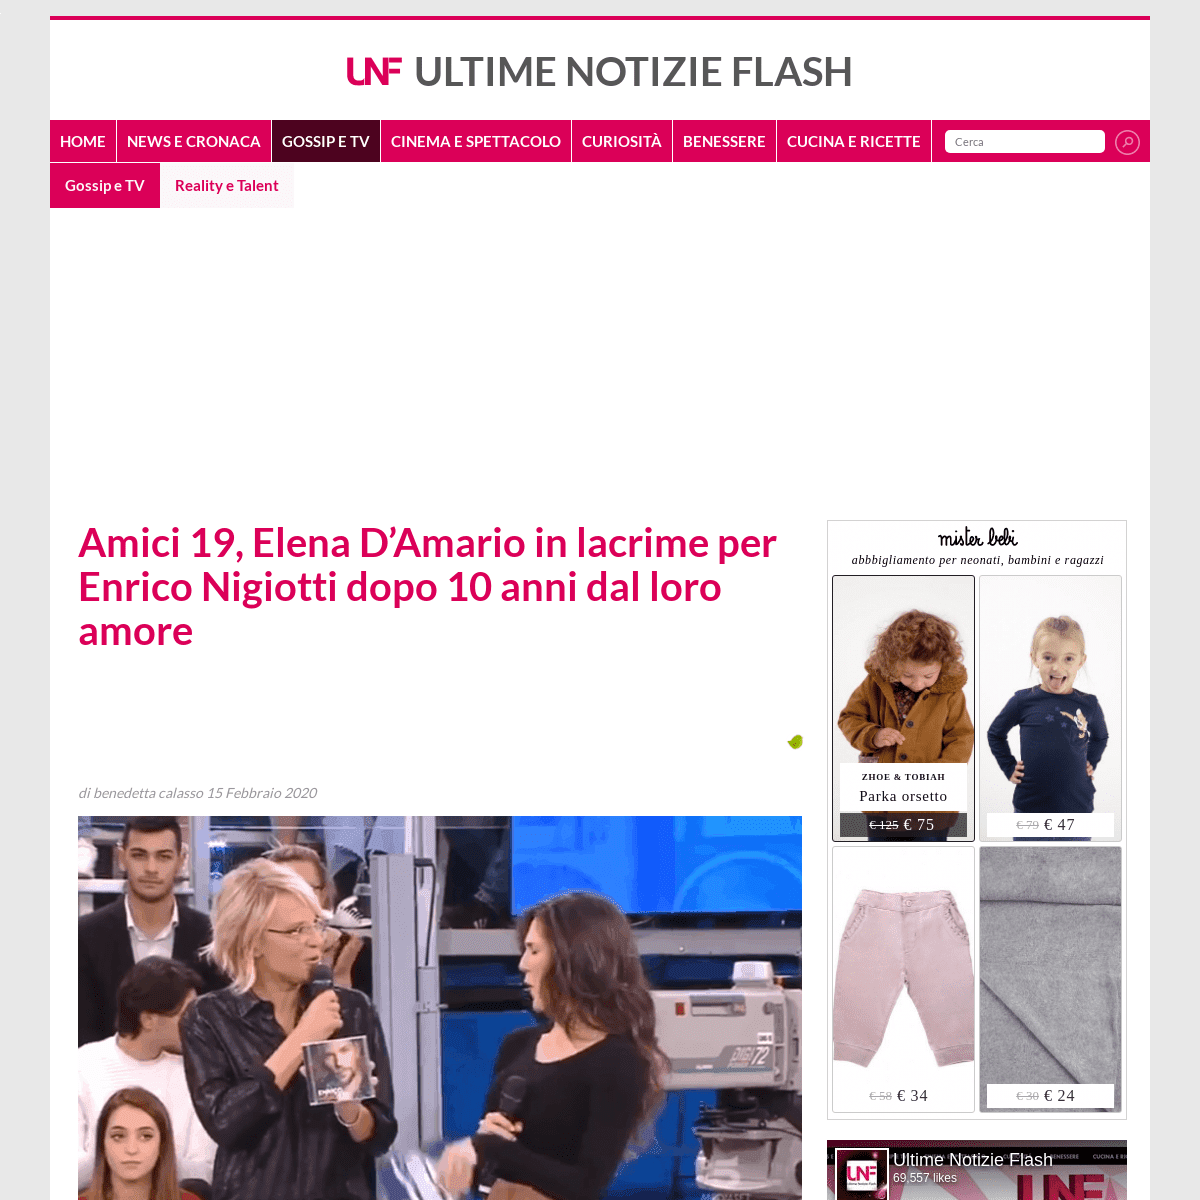 A complete backup of www.ultimenotizieflash.com/gossip-tv/reality-talent/2020/02/15/amici-19-elena-damario-in-lacrime-per-enrico